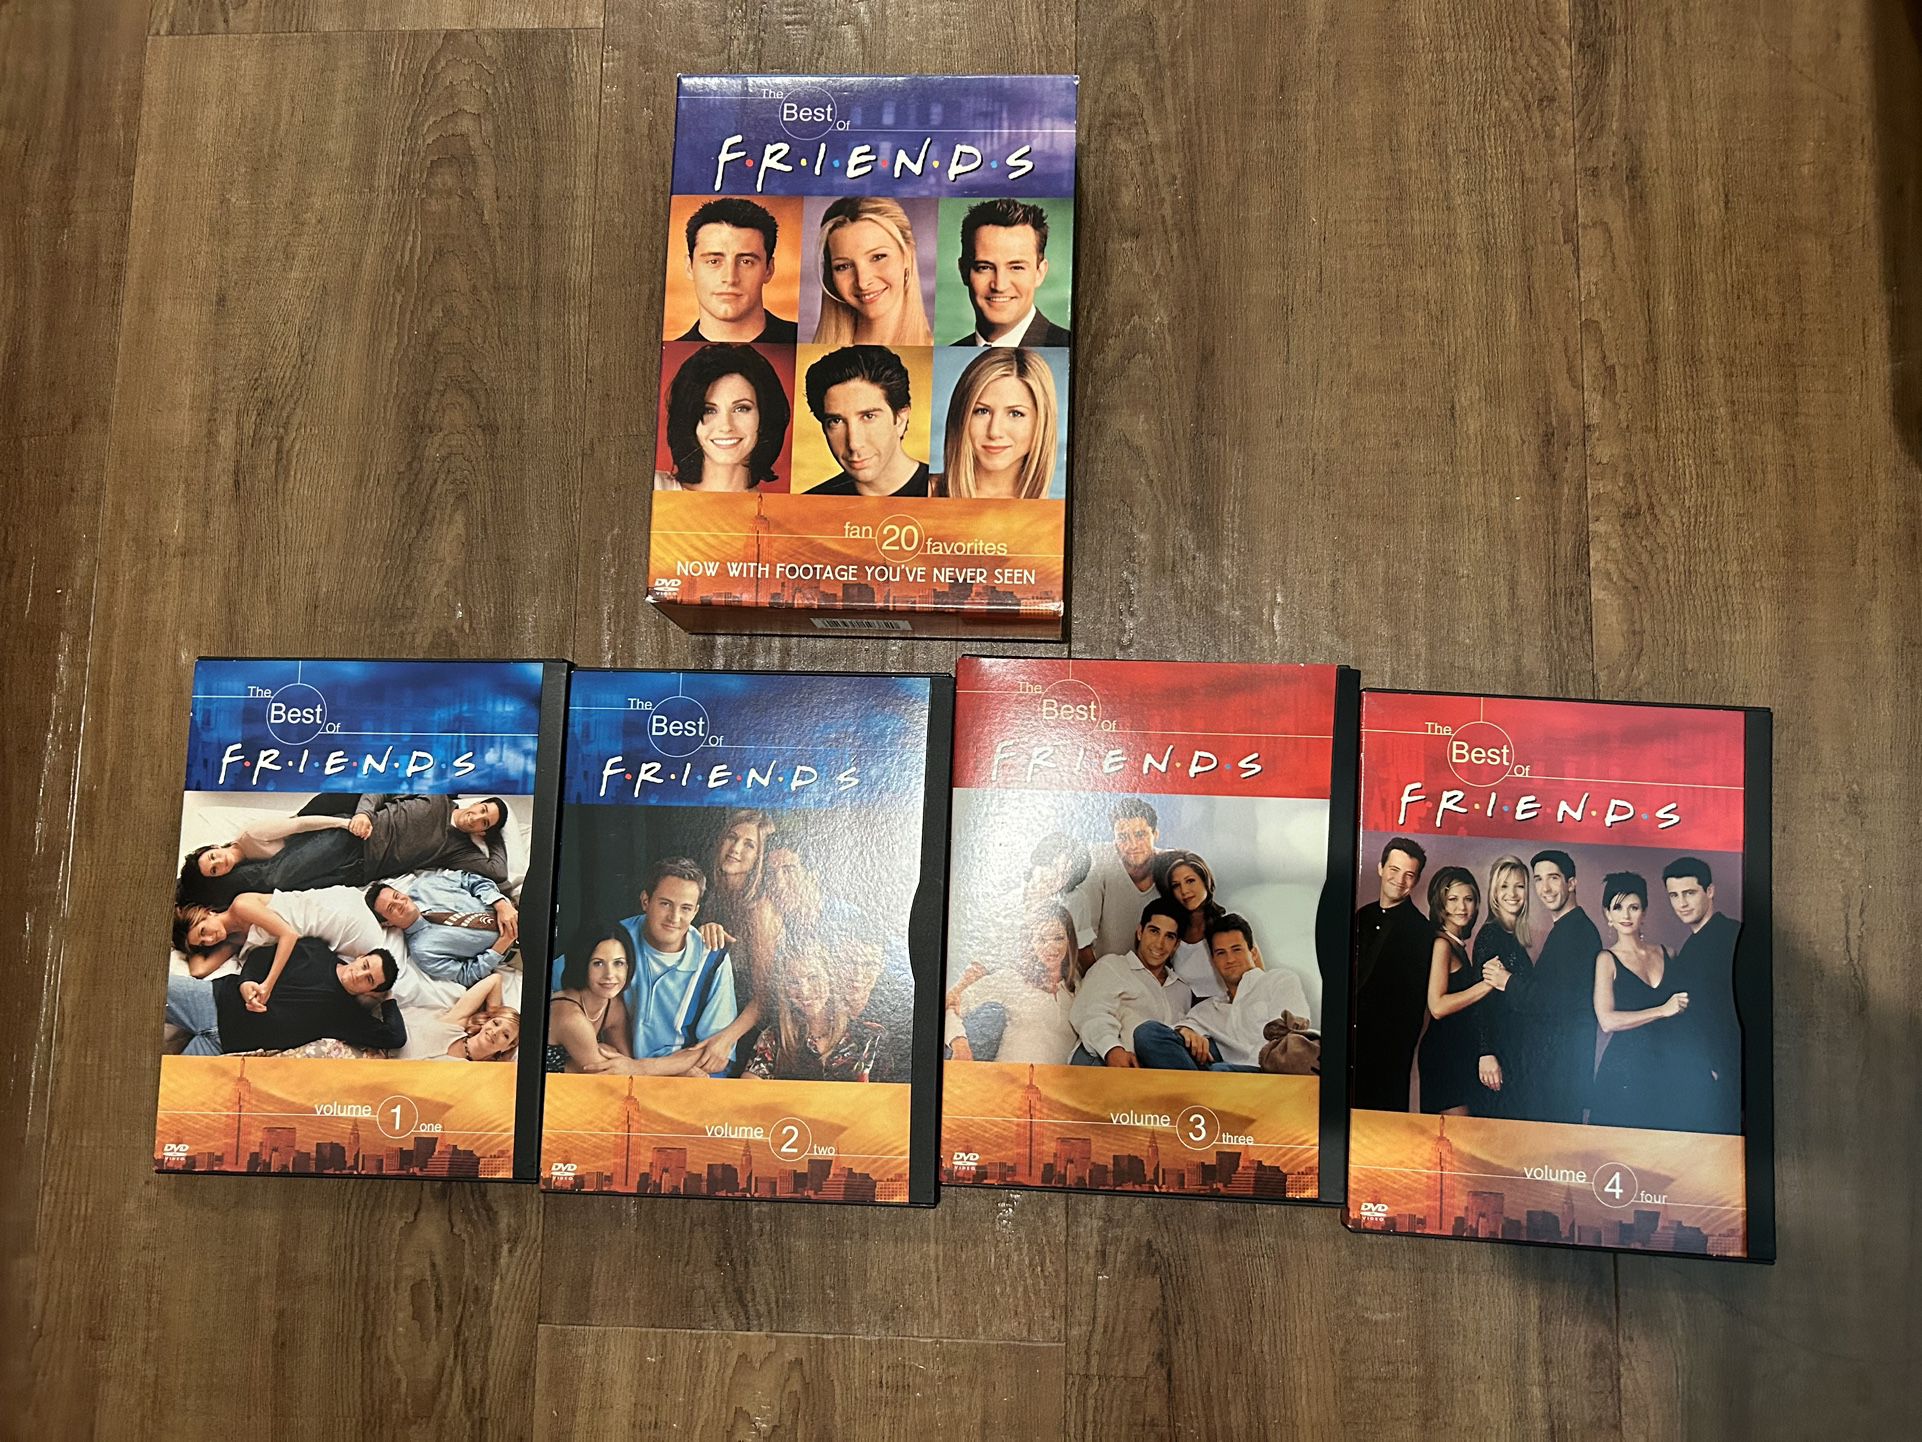 The Best Of FRIENDS DVD Set - Fan 20 Favorites